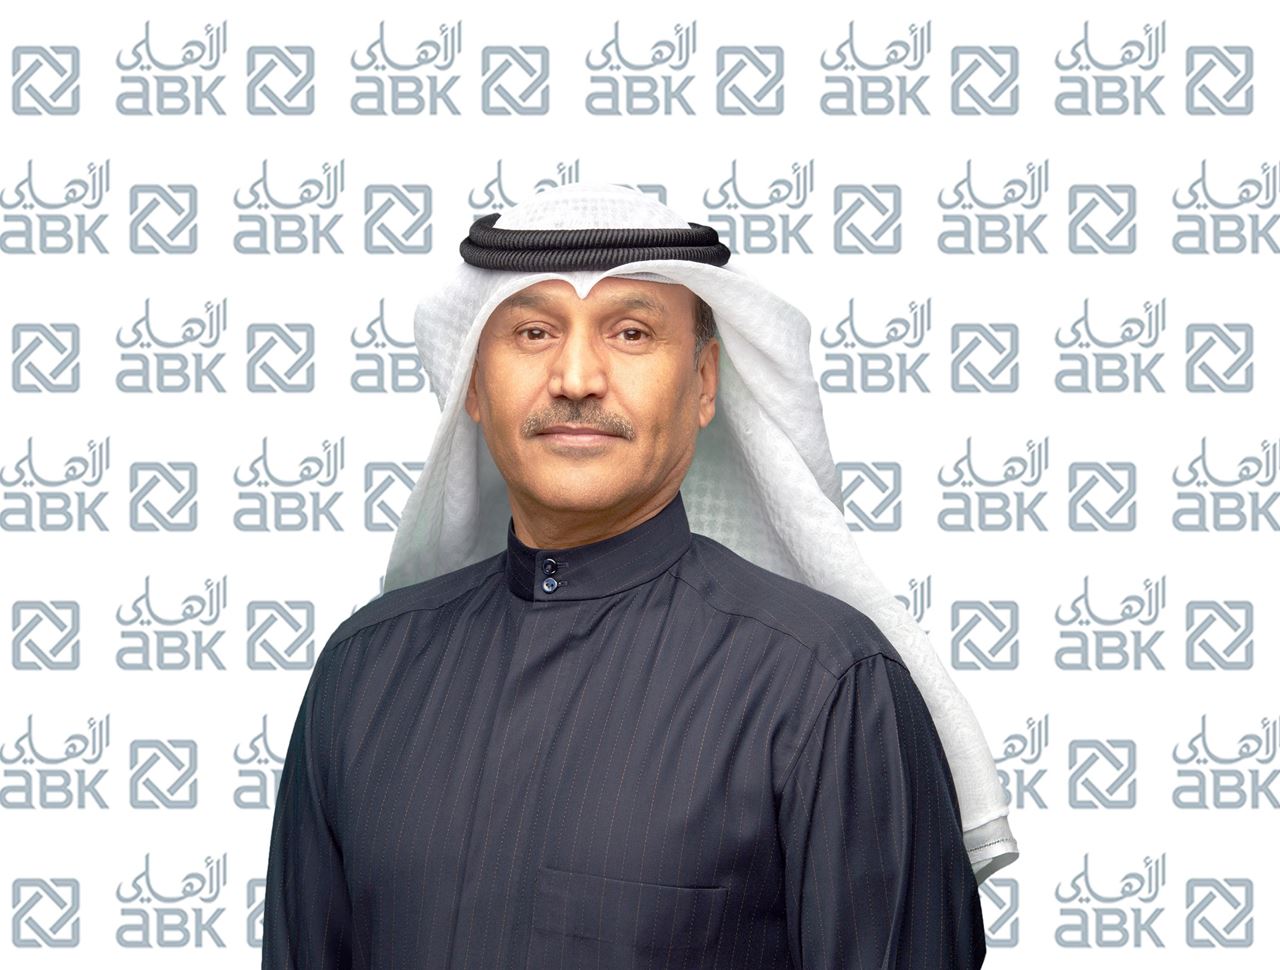 السيد/ محمد البلوشي، مدير عام إدارة العمليات في البنك الأهلي الكويتي